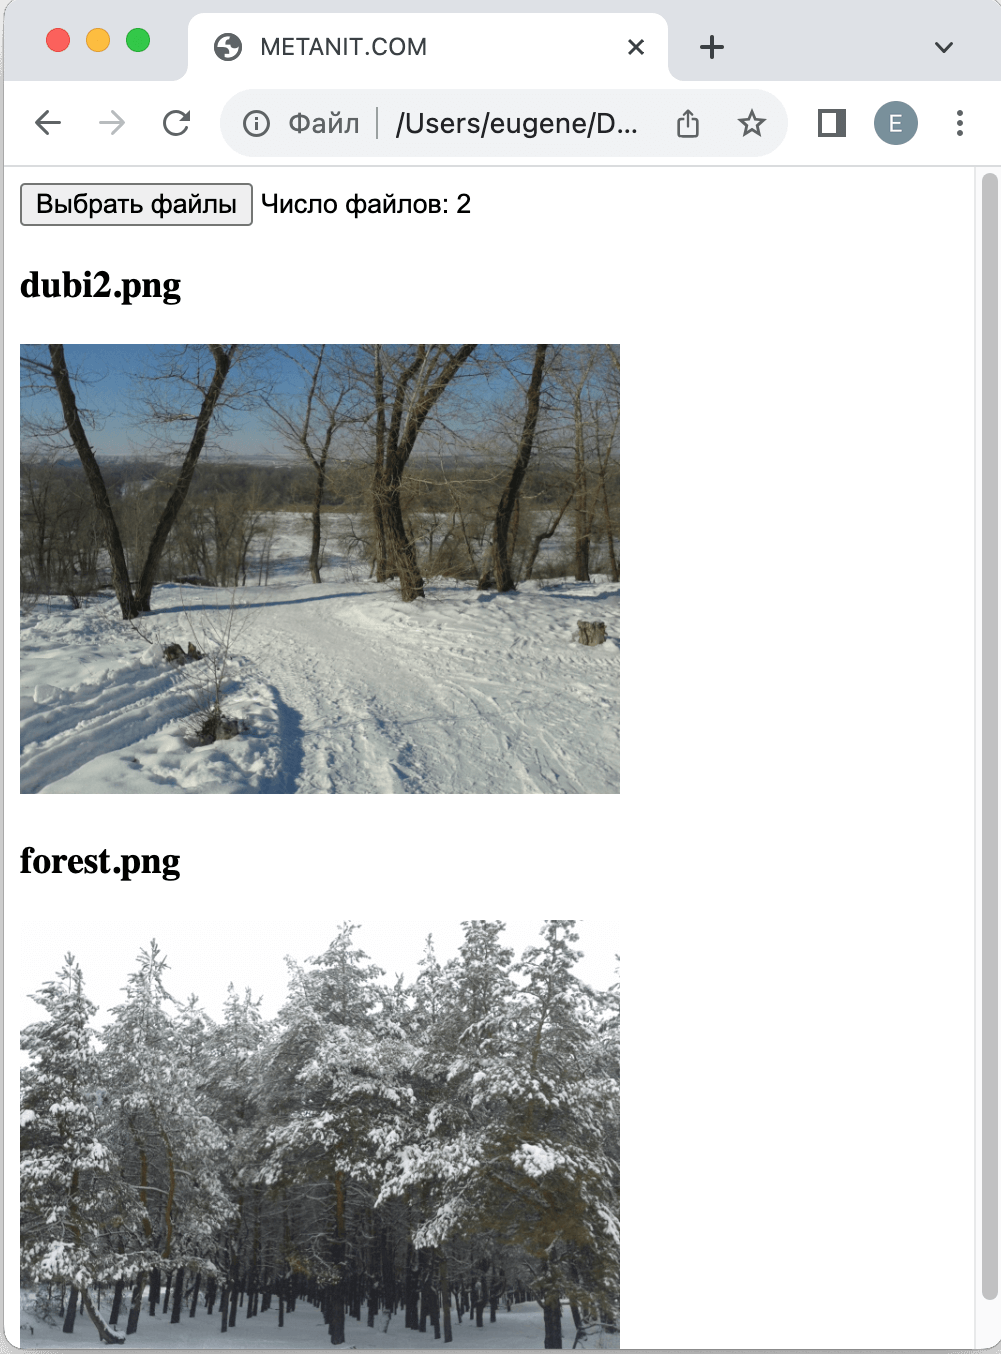 Считывание изображений с помощью FileReader в JavaScript